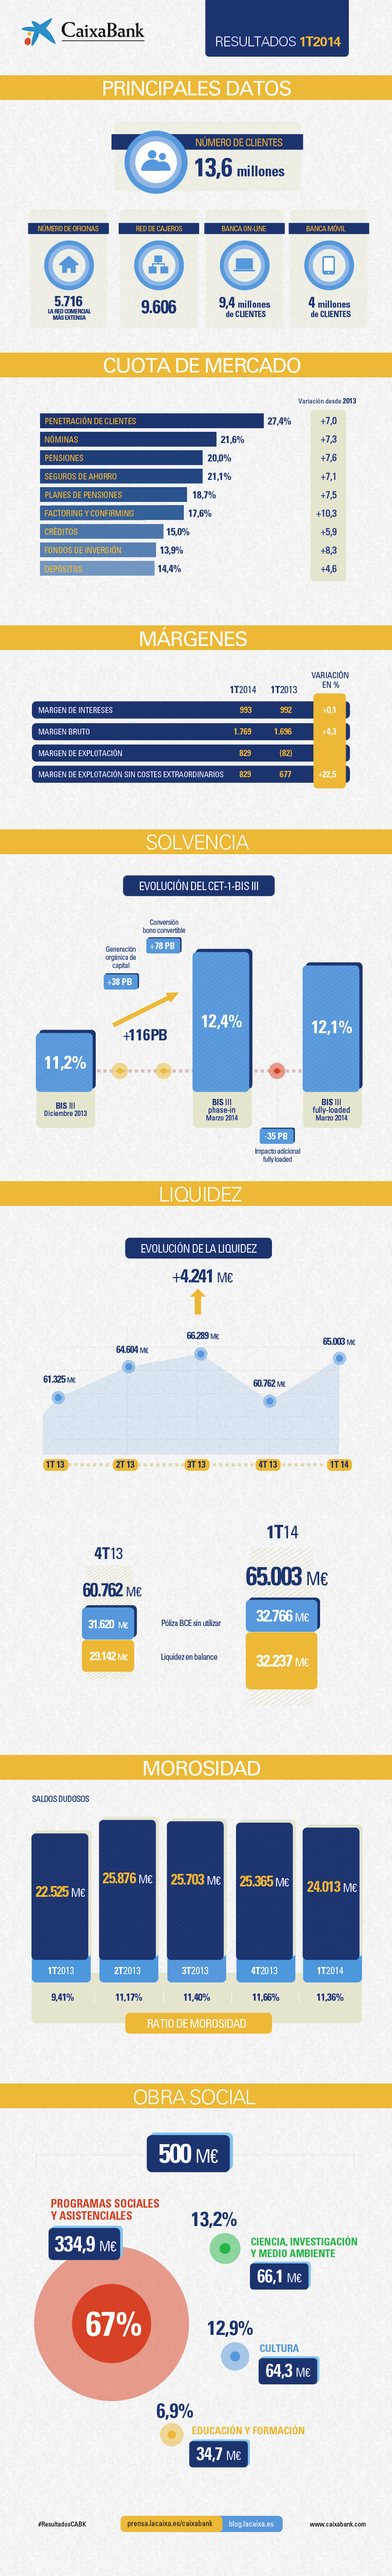 Infografía de Resultados CaixaBank 1T2014